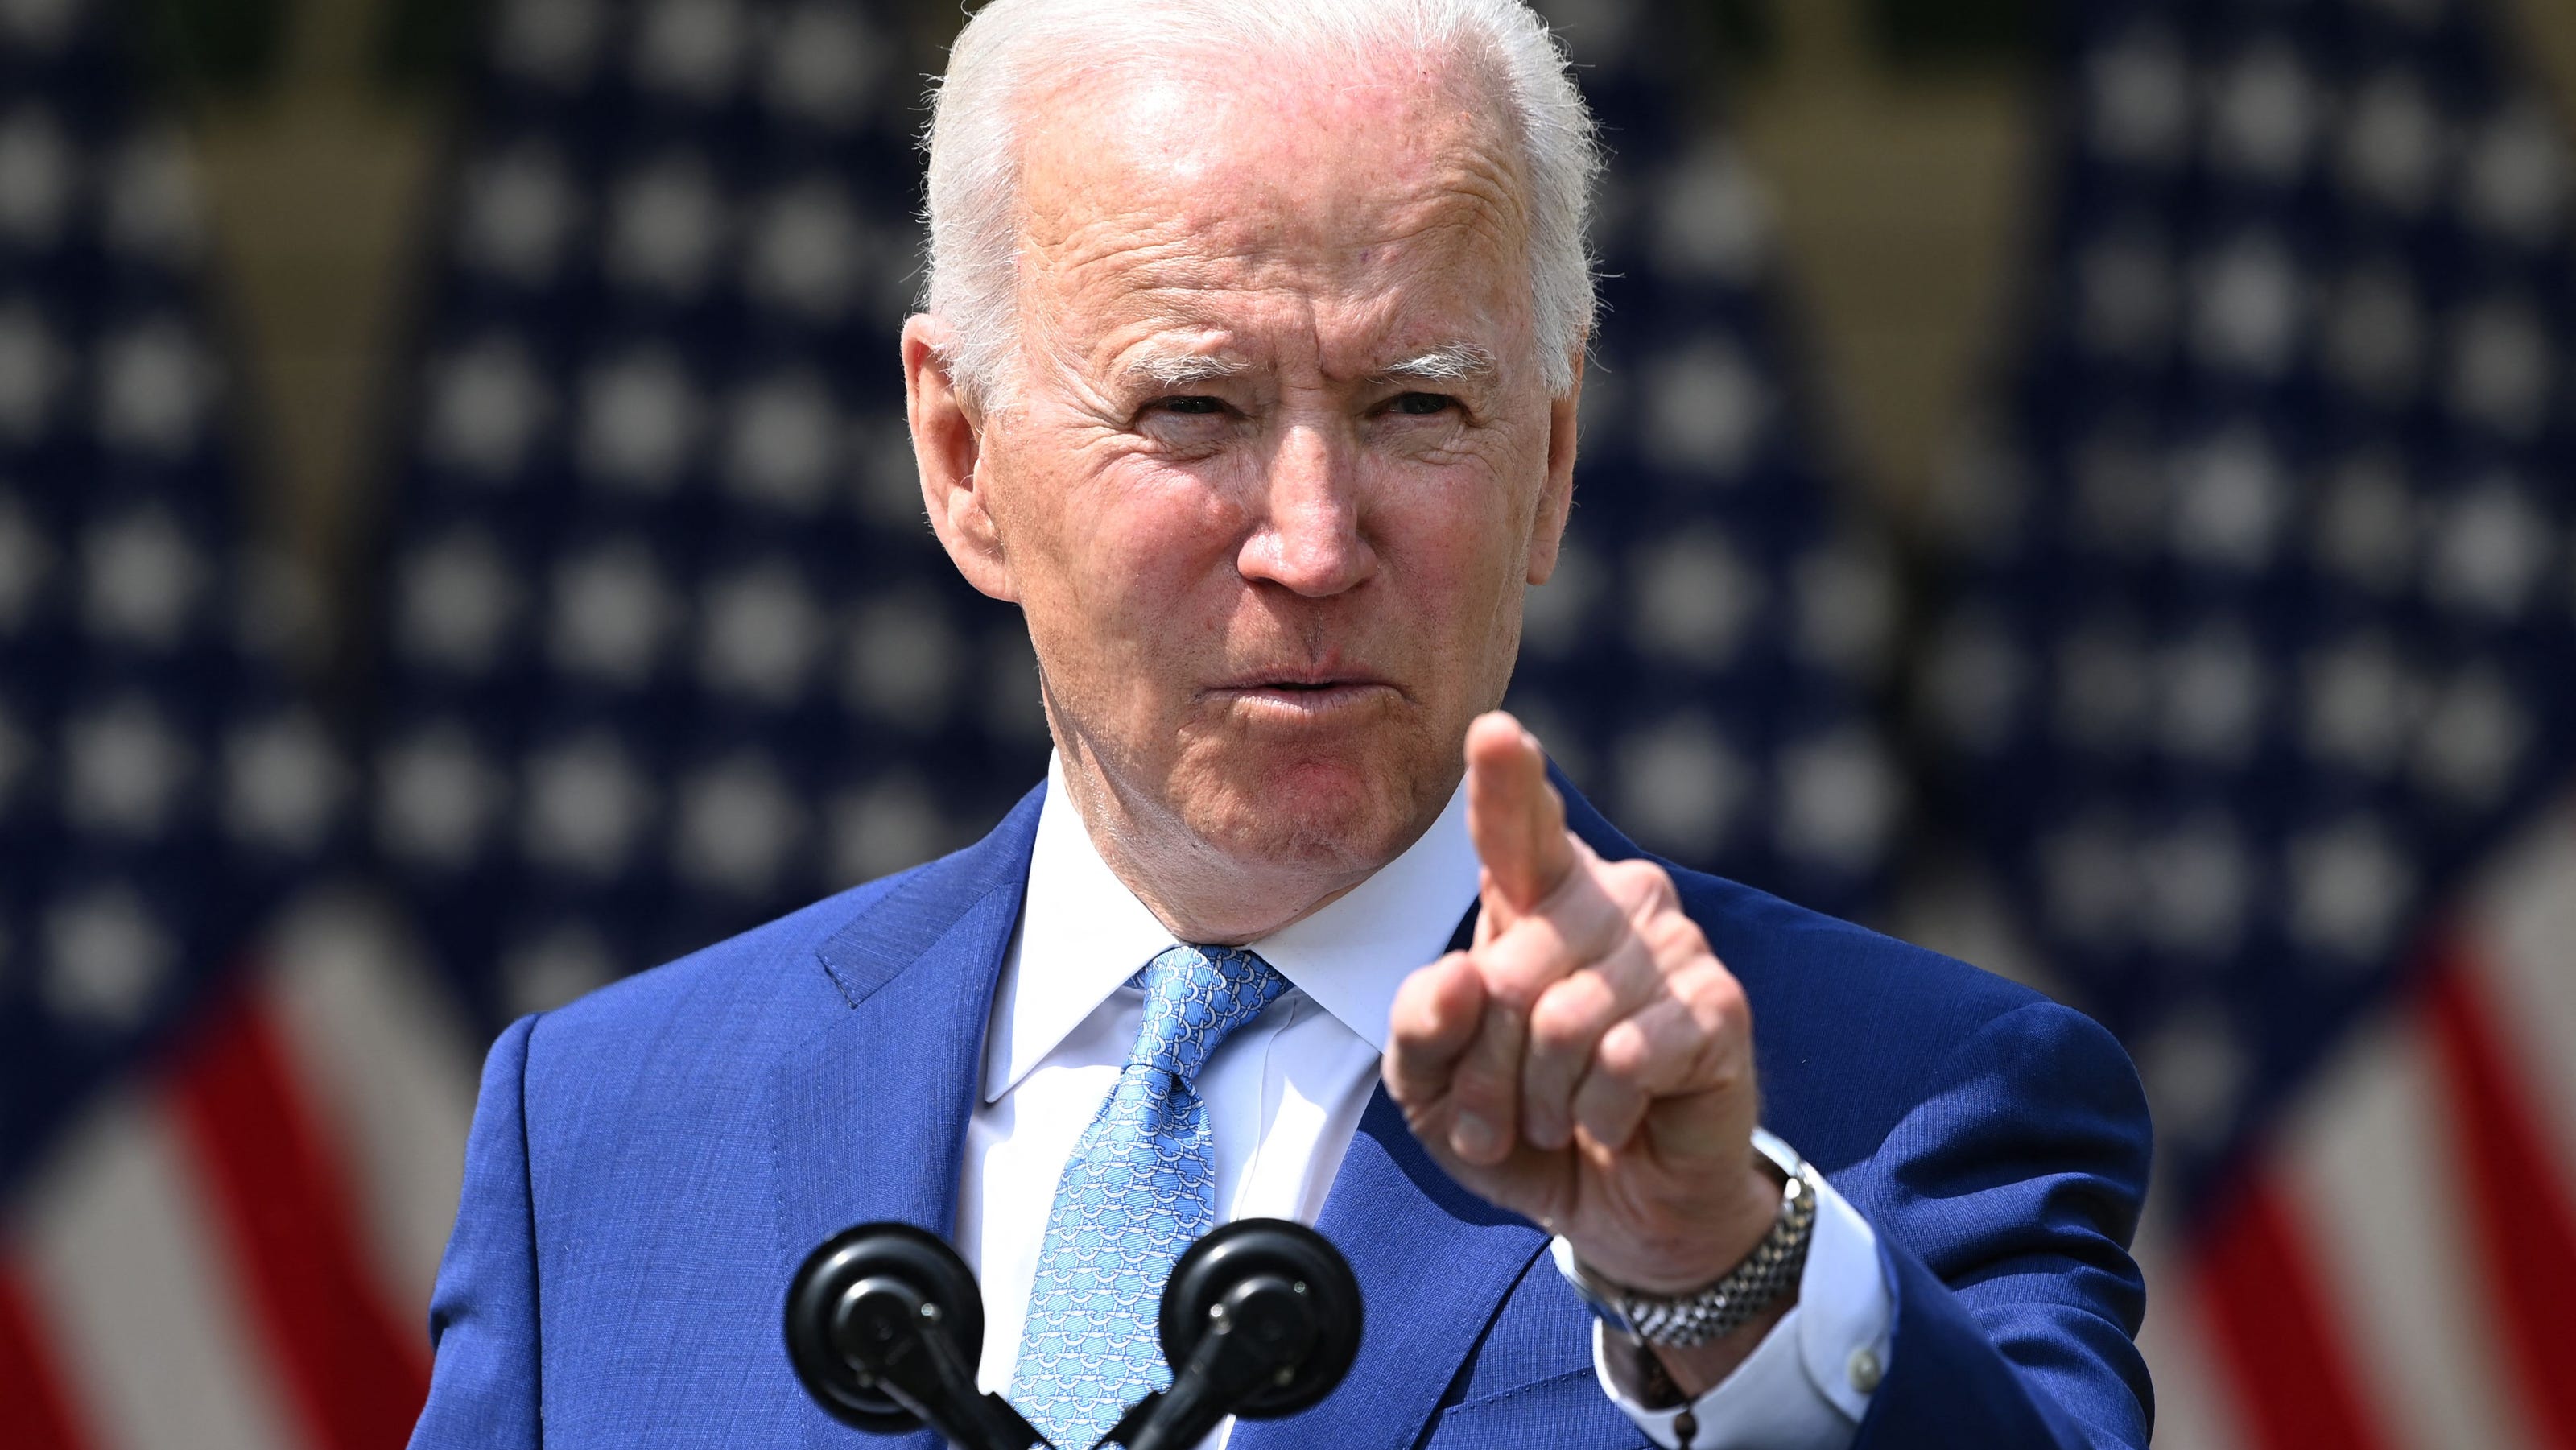 Joe Biden To Urge Action On Gun Bills In Address To Congress